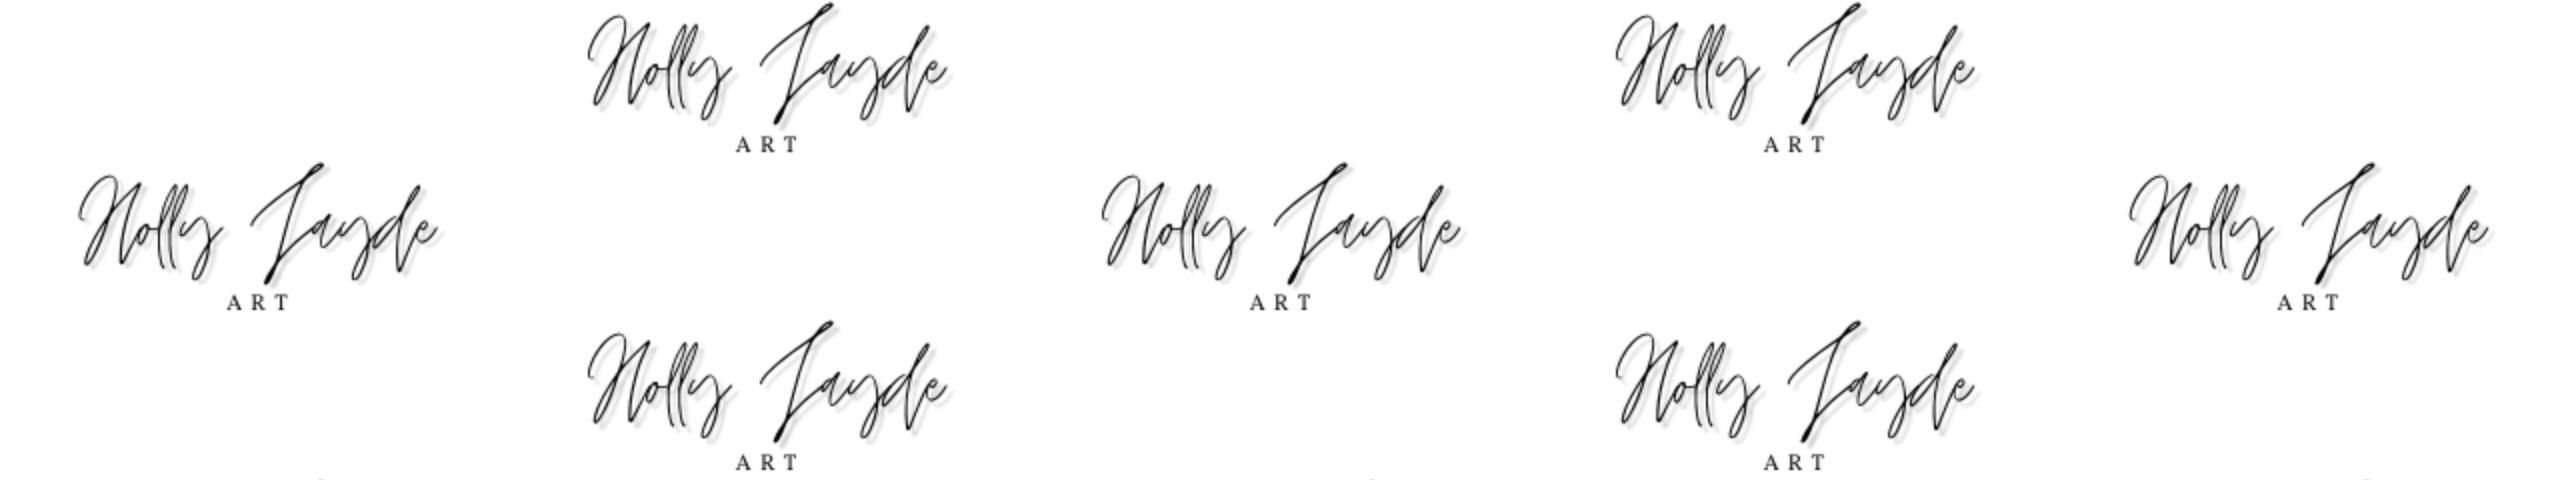 Holly Jayde Art Is Artist